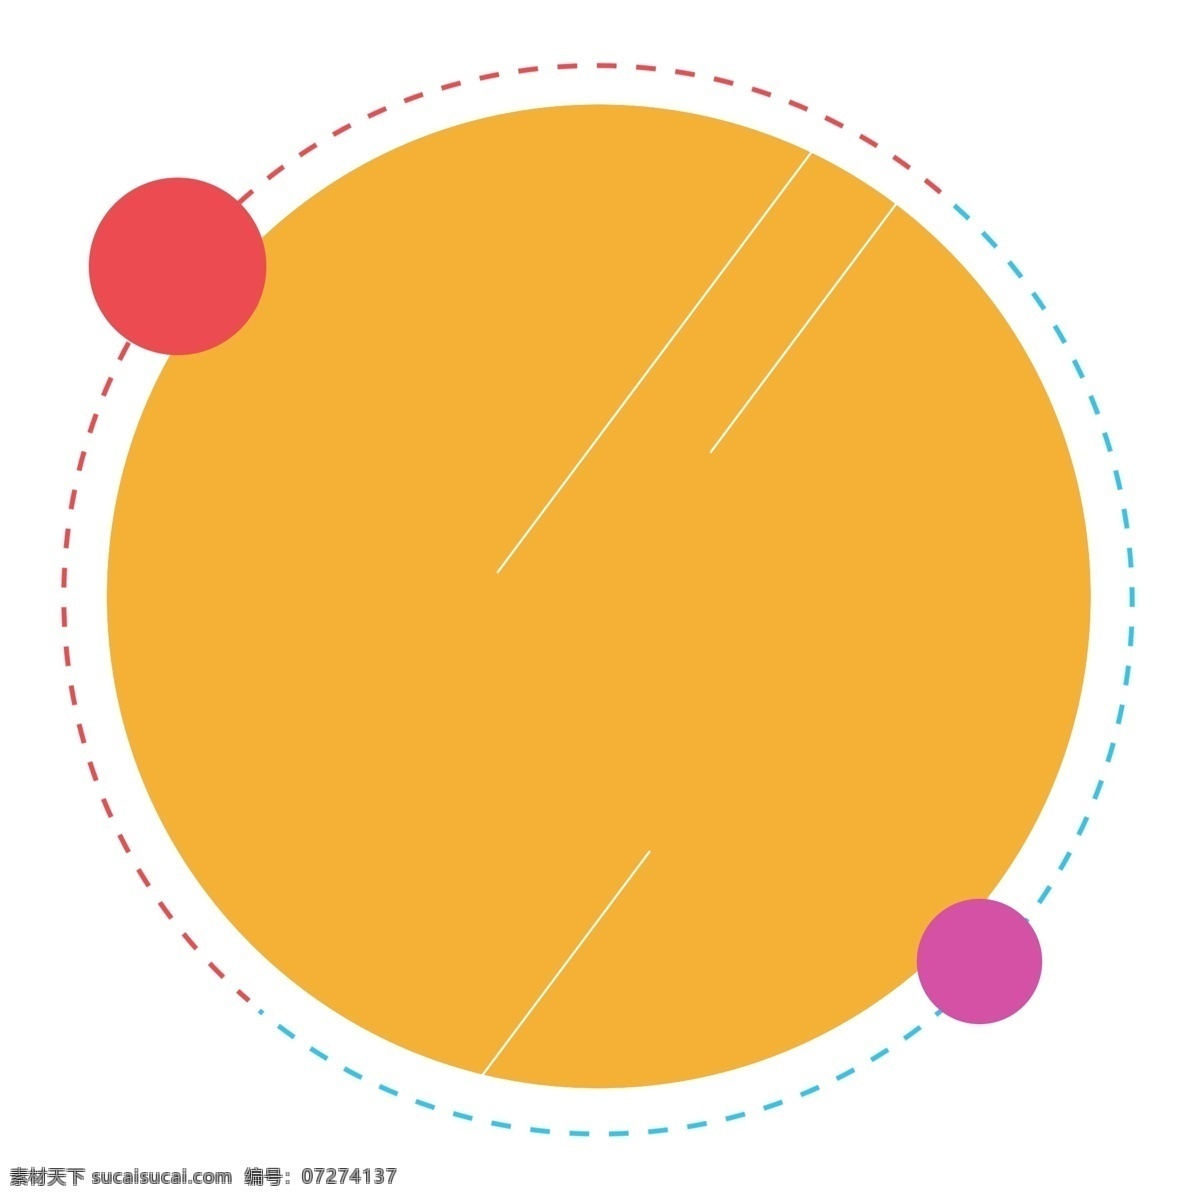 黄色 创意 圆形 标签 黄色标签 几何 速度线 黄红 圆点 科技感 对话框 扁平化 卡通对话框 文本框 彩 色 语言框 底纹边框